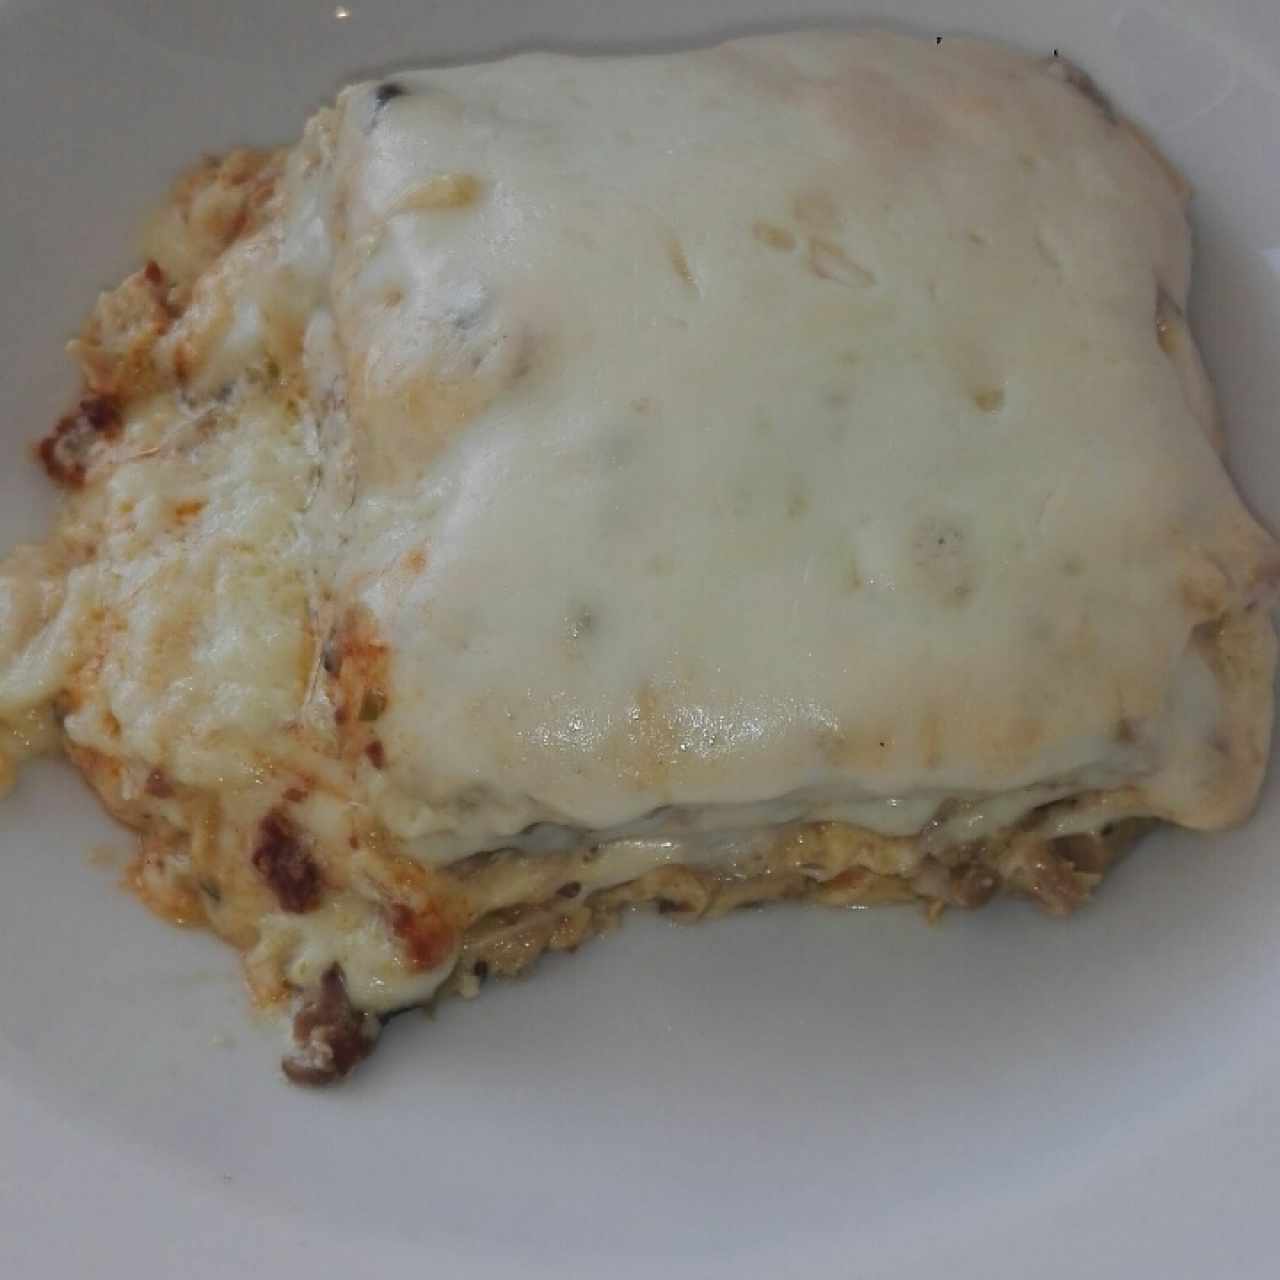 Lasagna de Pollo